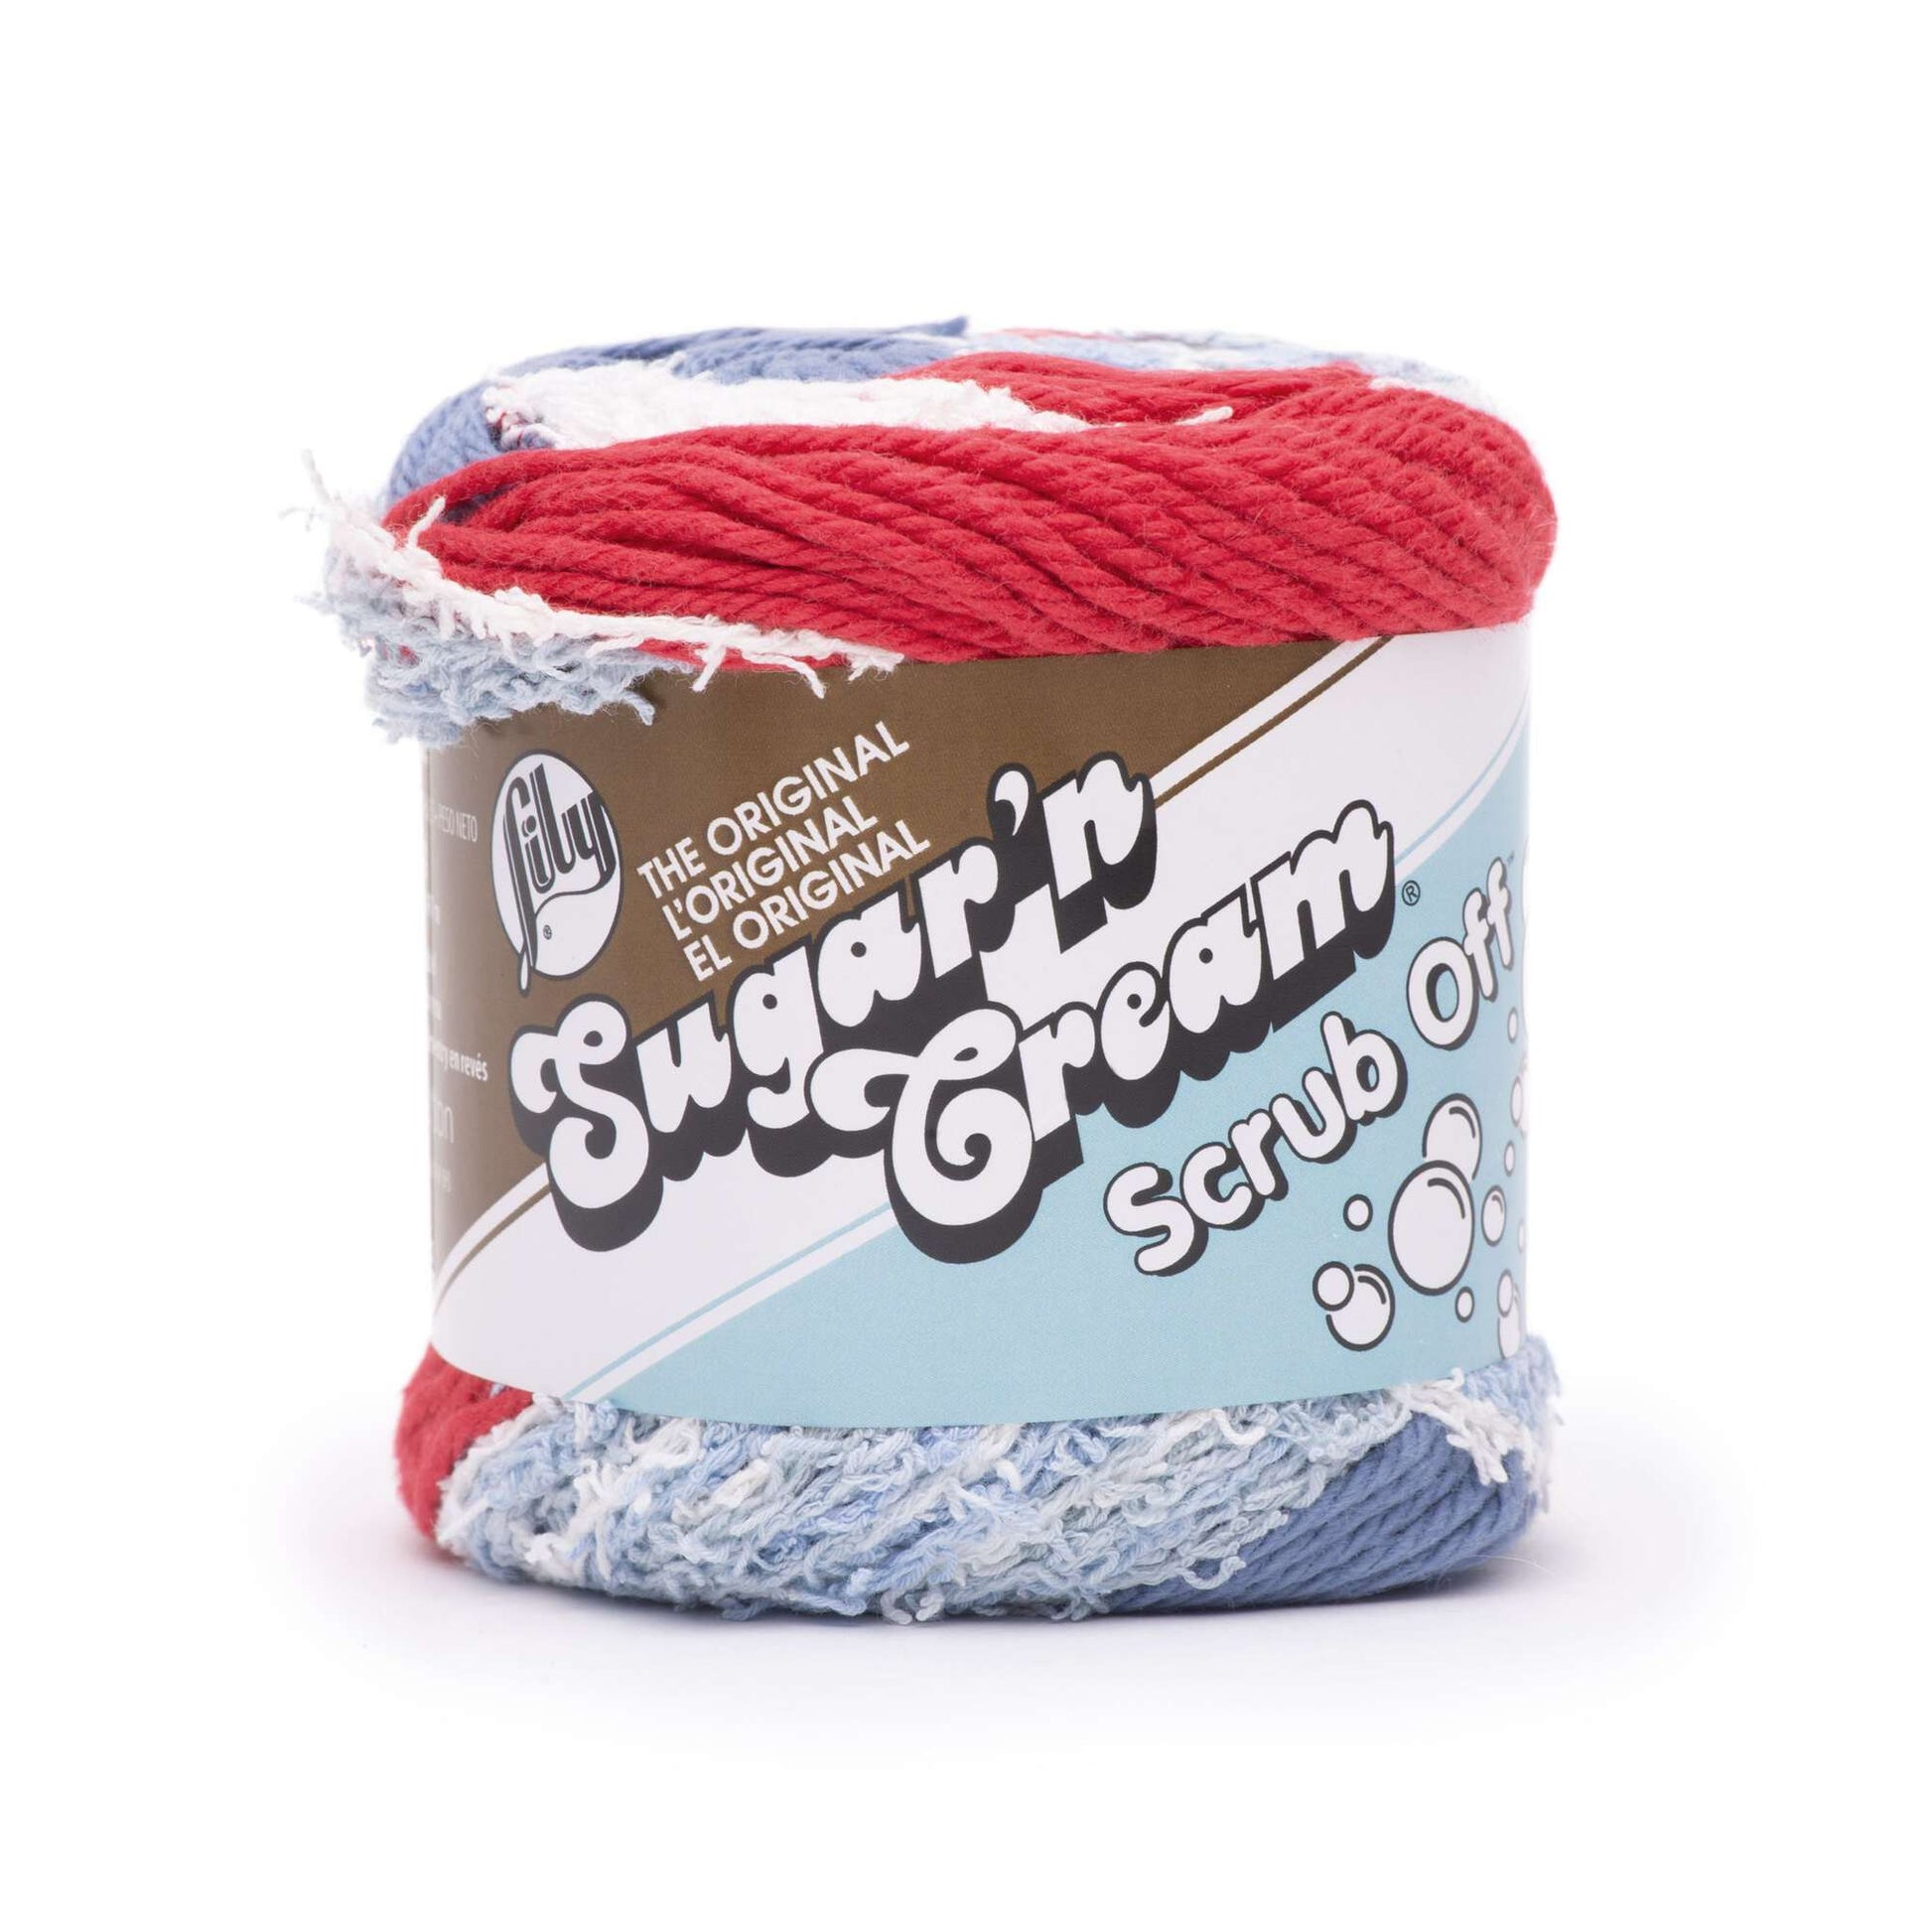 Lily Sugar'n Cream Scrub Off Yarn Holiday Cheer